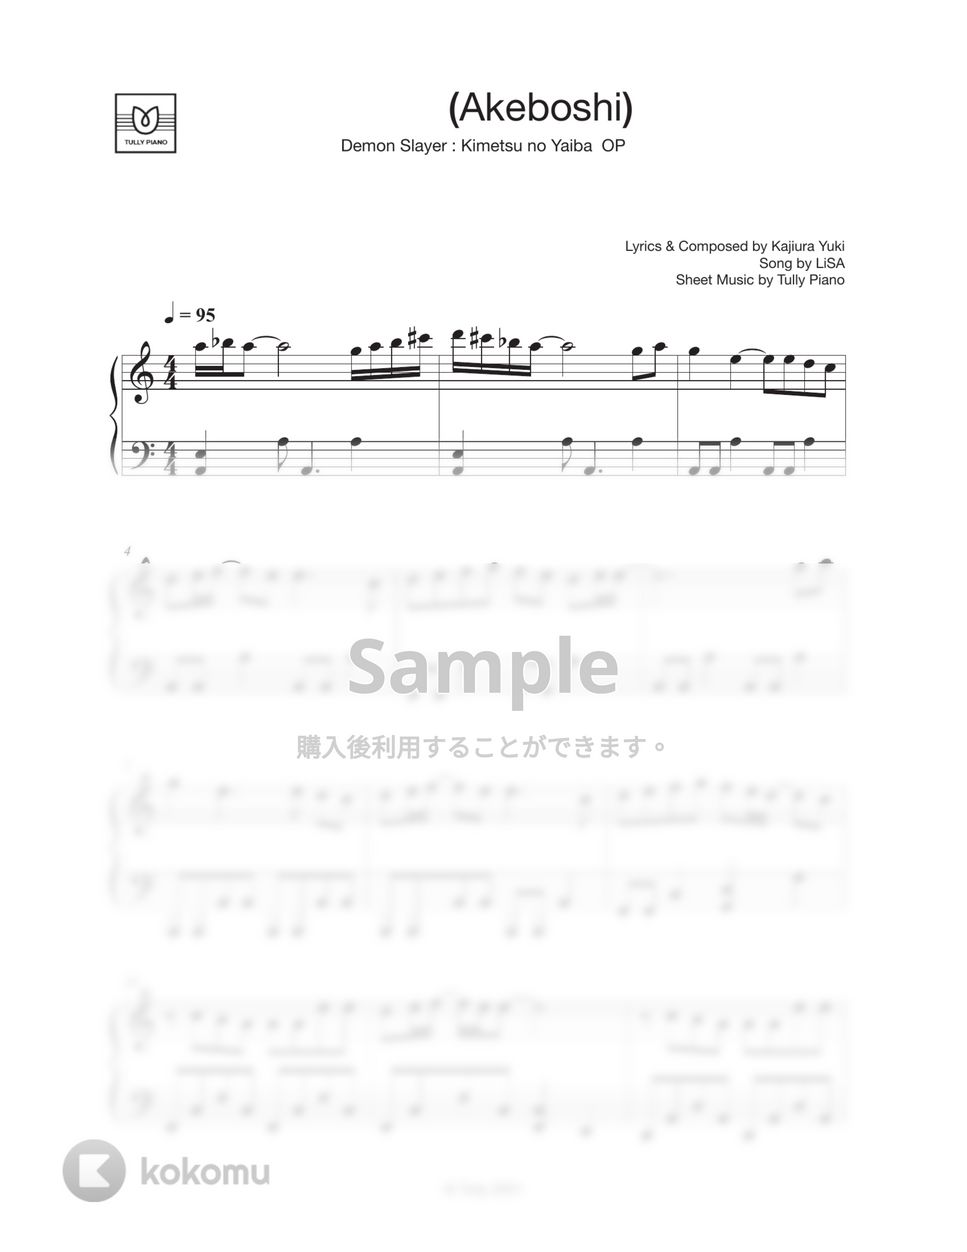 LiSA - 明け星 (Easy ver. / 移調 / 鬼滅の刃 無限列車編 OP) by Tully Piano